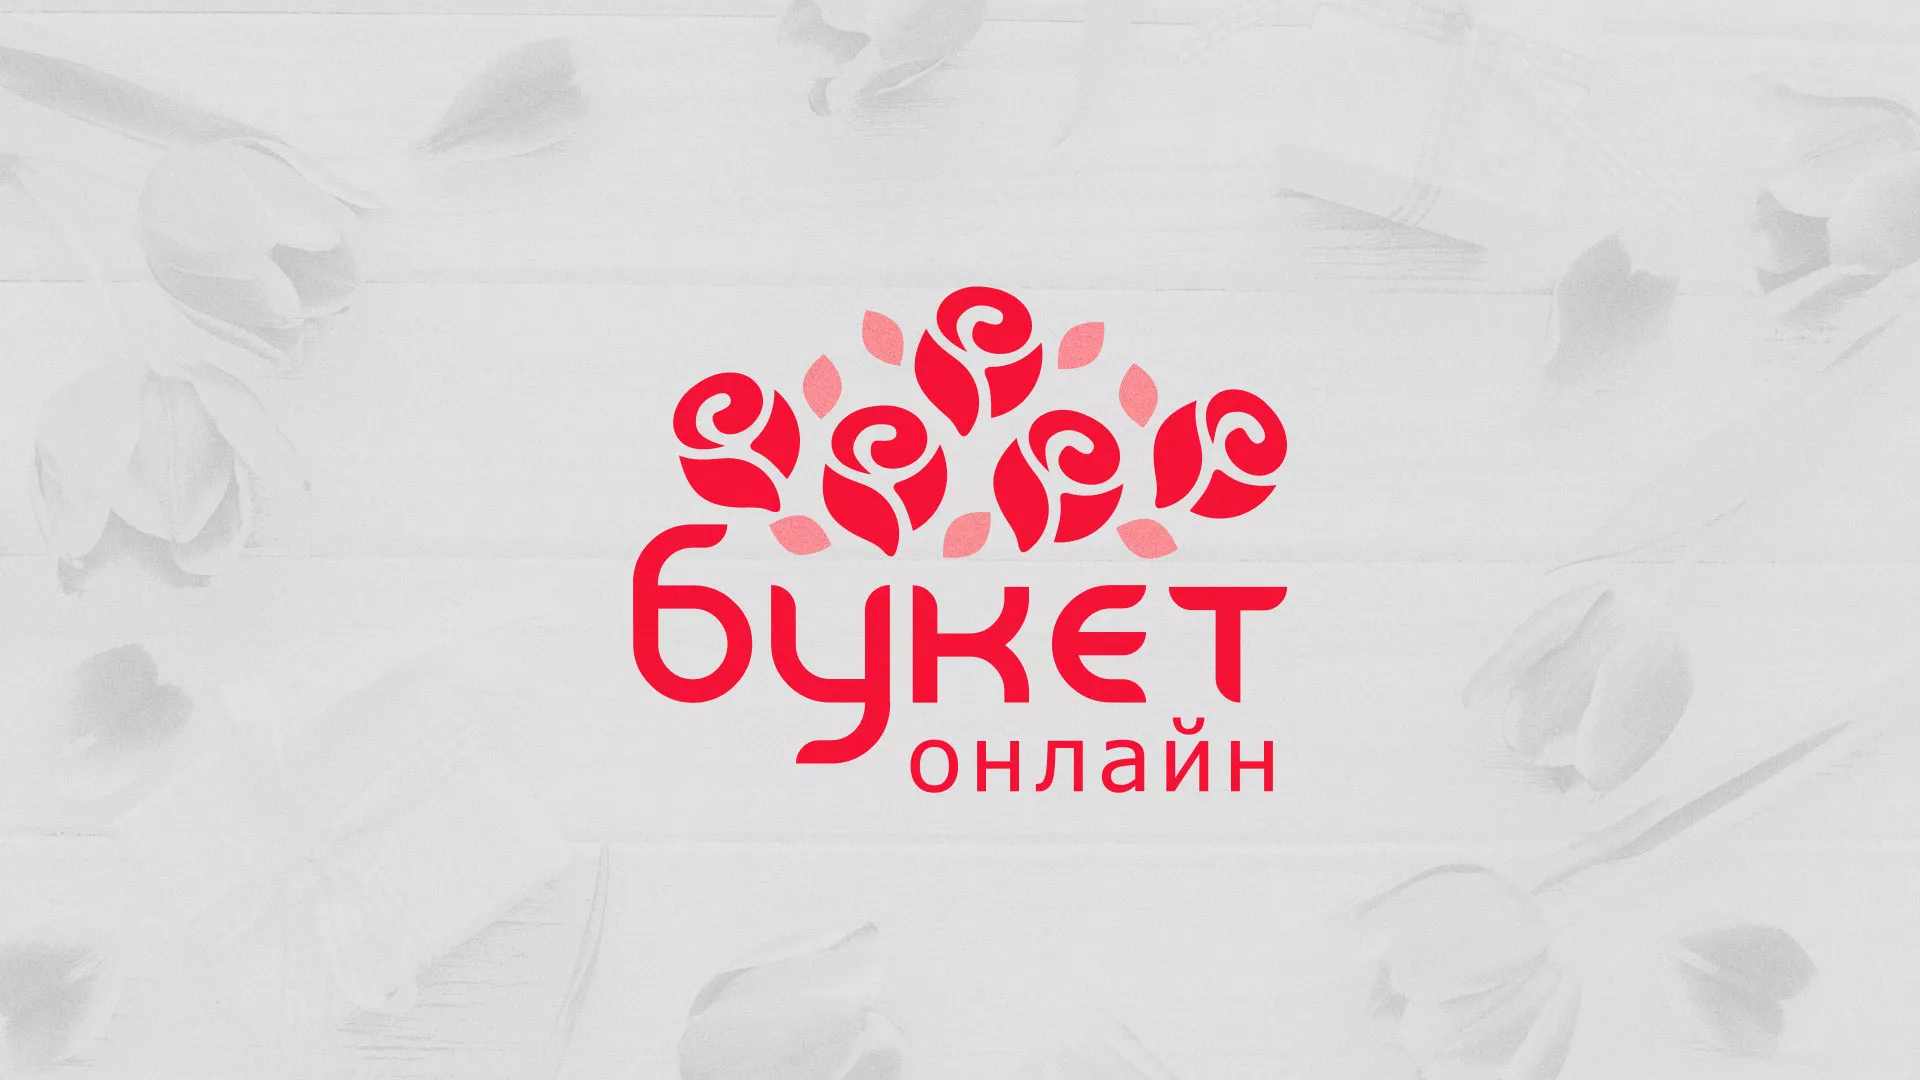 Создание интернет-магазина «Букет-онлайн» по цветам в Осташкове